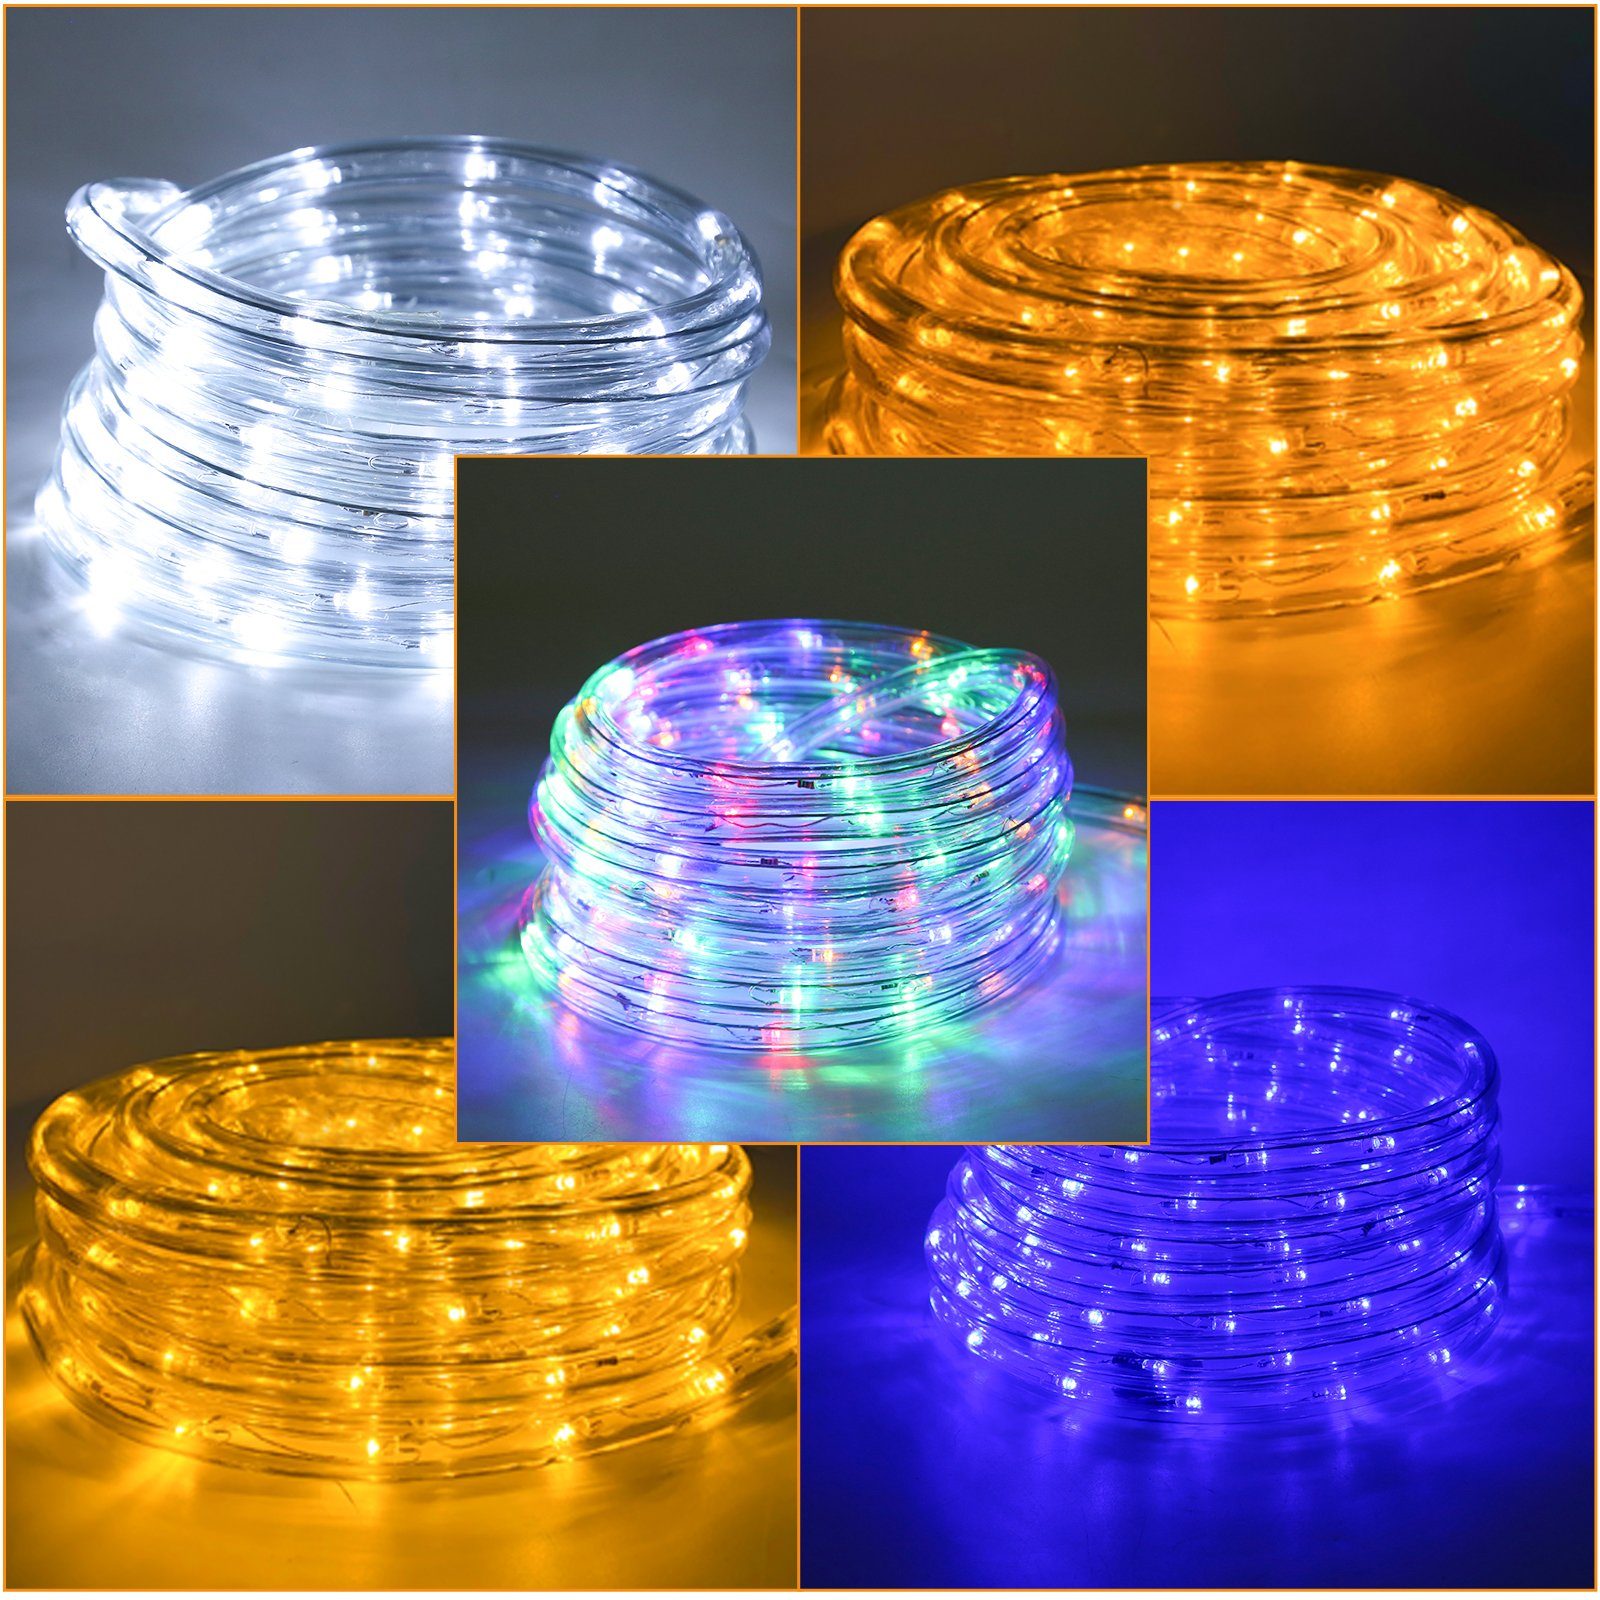 Clanmacy LED-Lichterkette Lichterschlauch Lichtschlauch Lichterkette Wasserdicht